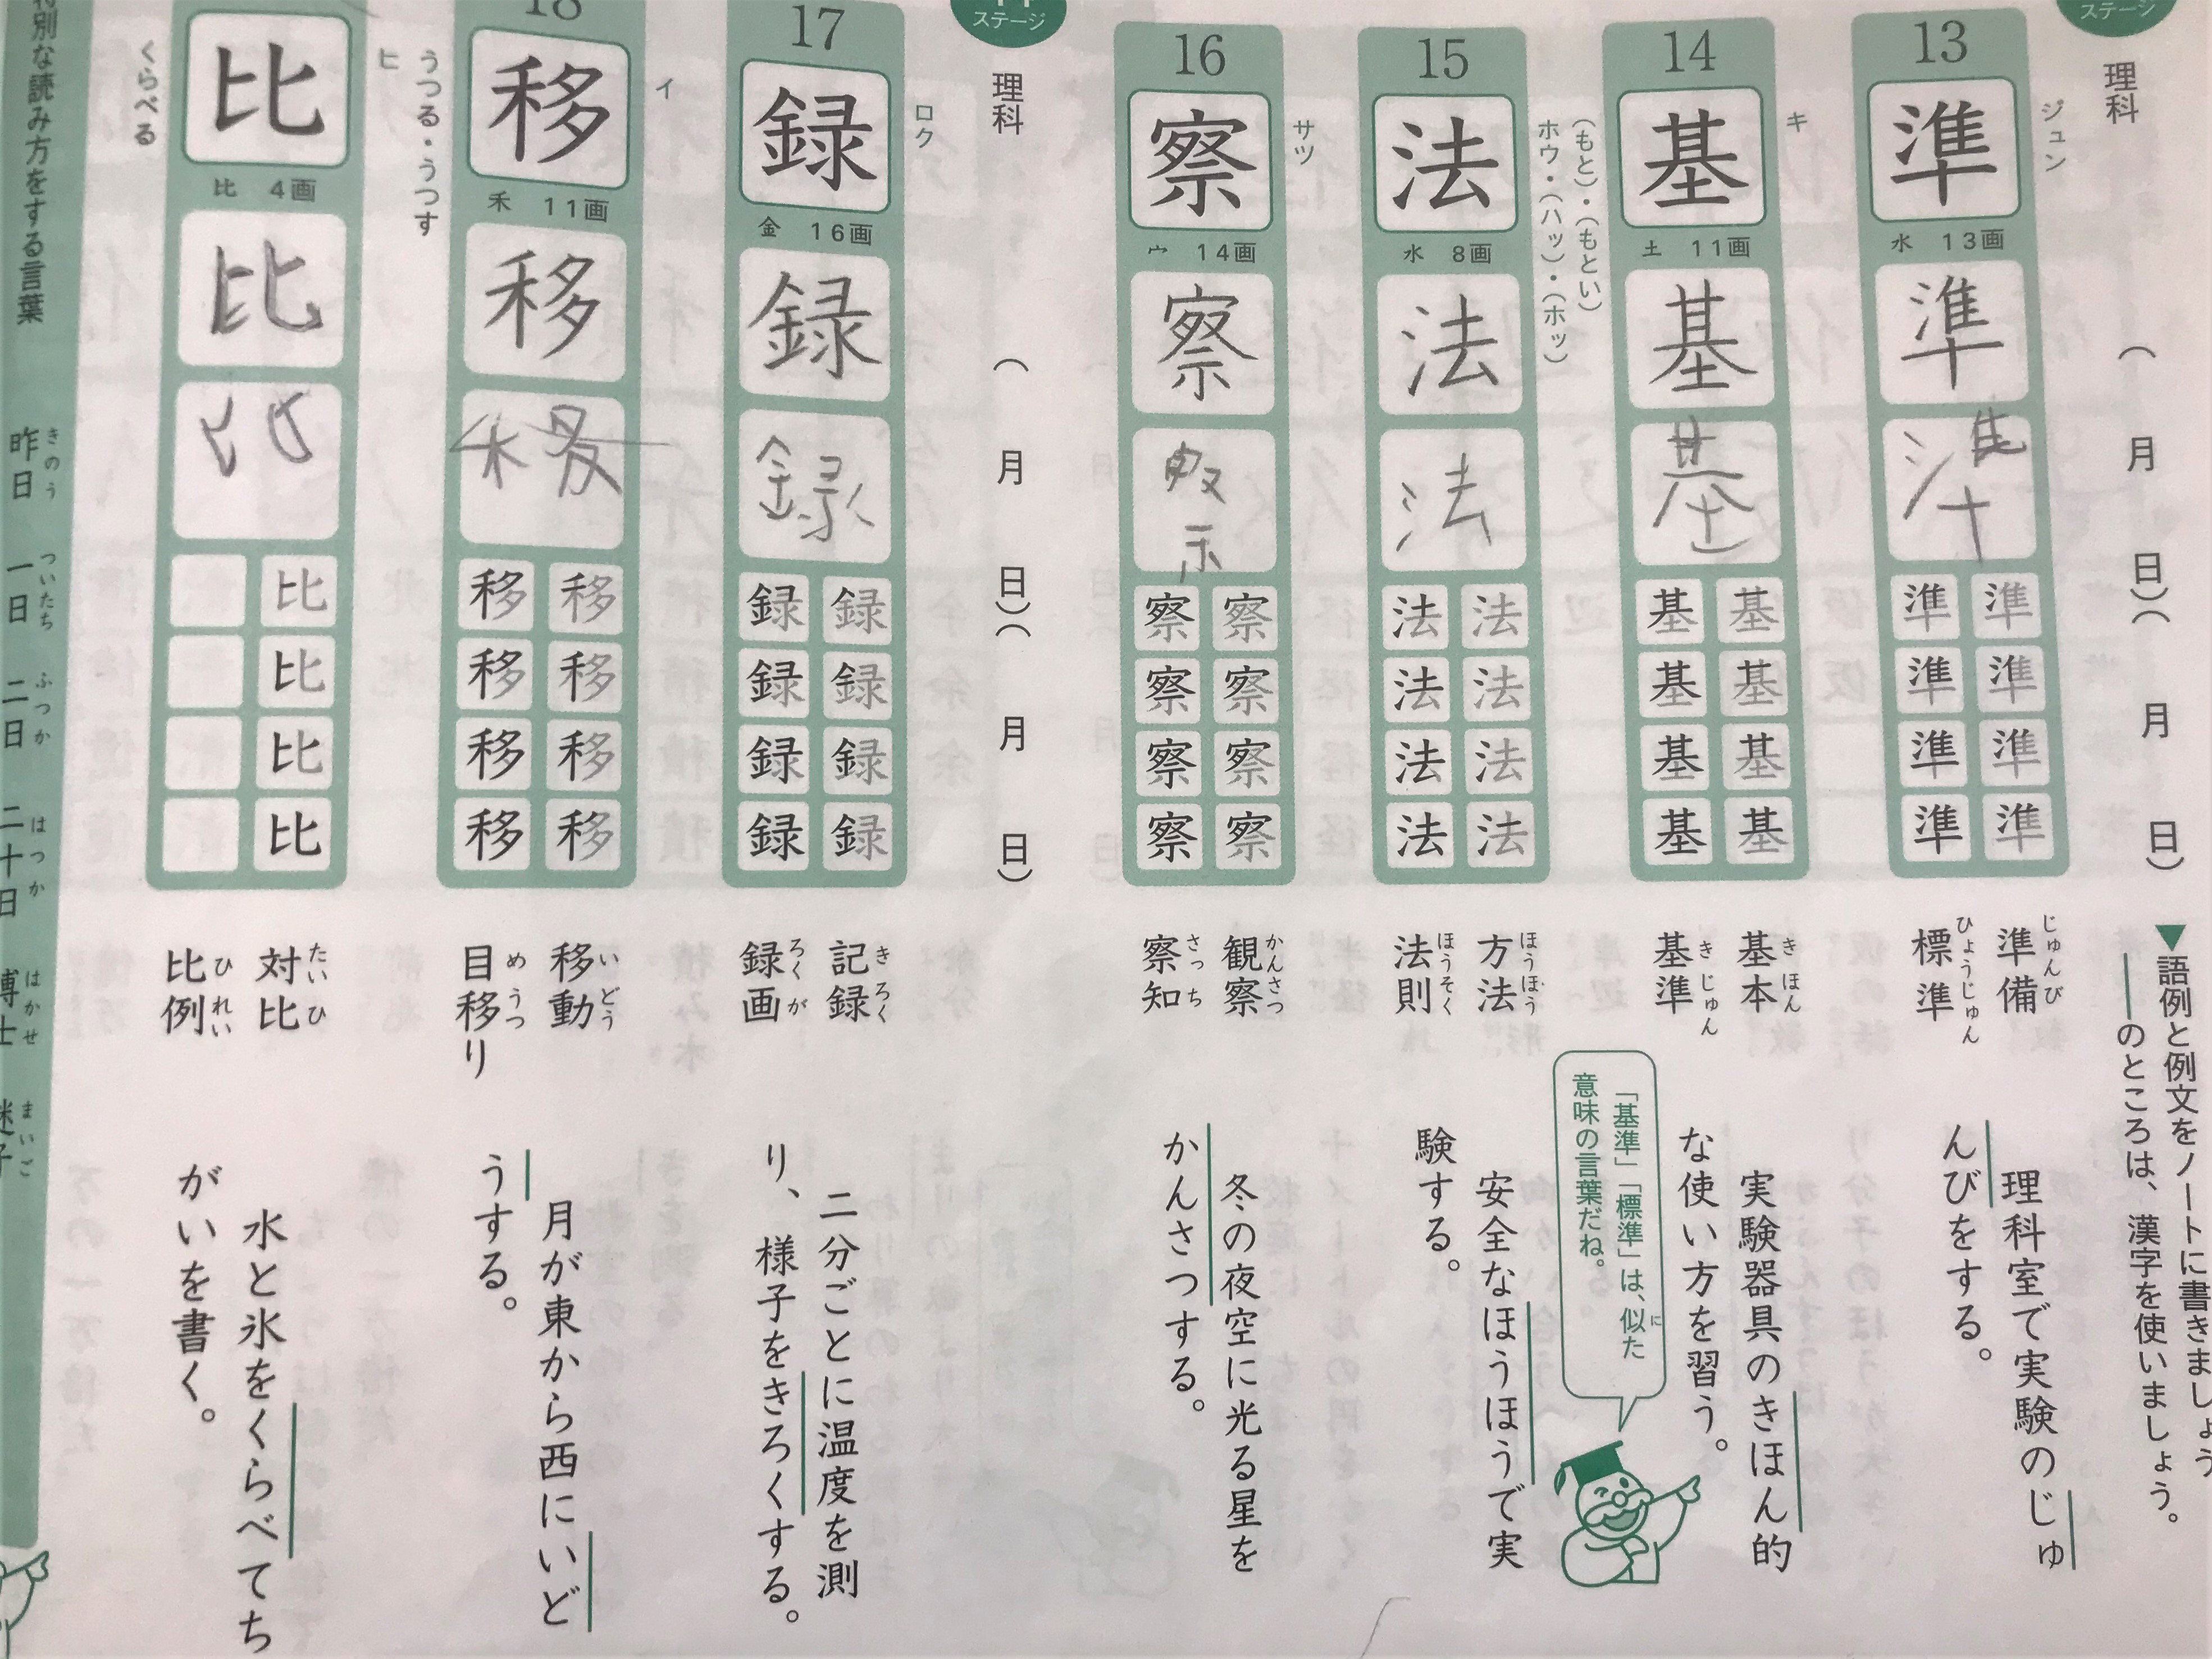 漢字テスト0点常連から高得点連発へ 書字障害の息子向け漢字覚え術 漢字が苦手なコースケは